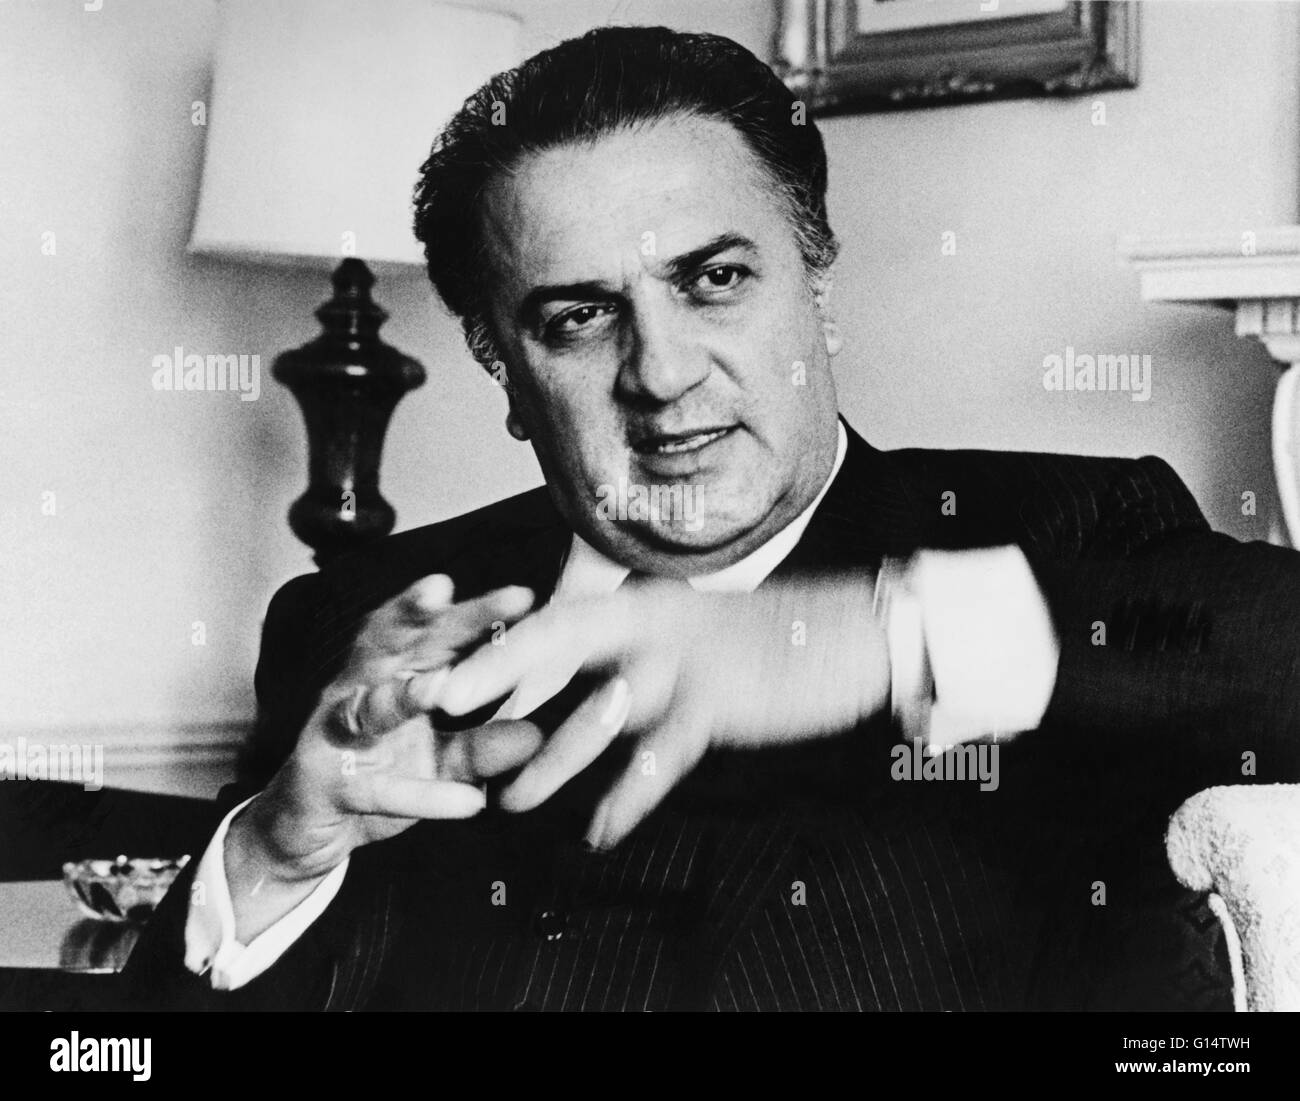 Fellini, photographié en 1965 par Walter Albertin. Federico Fellini (Janvier 20, 1920 - Octobre 31, 1993) était un réalisateur et scénariste italien. Connu pour un style bien particulier qui allie fantaisie et images baroques, il est considéré comme l'un des plus inf Banque D'Images